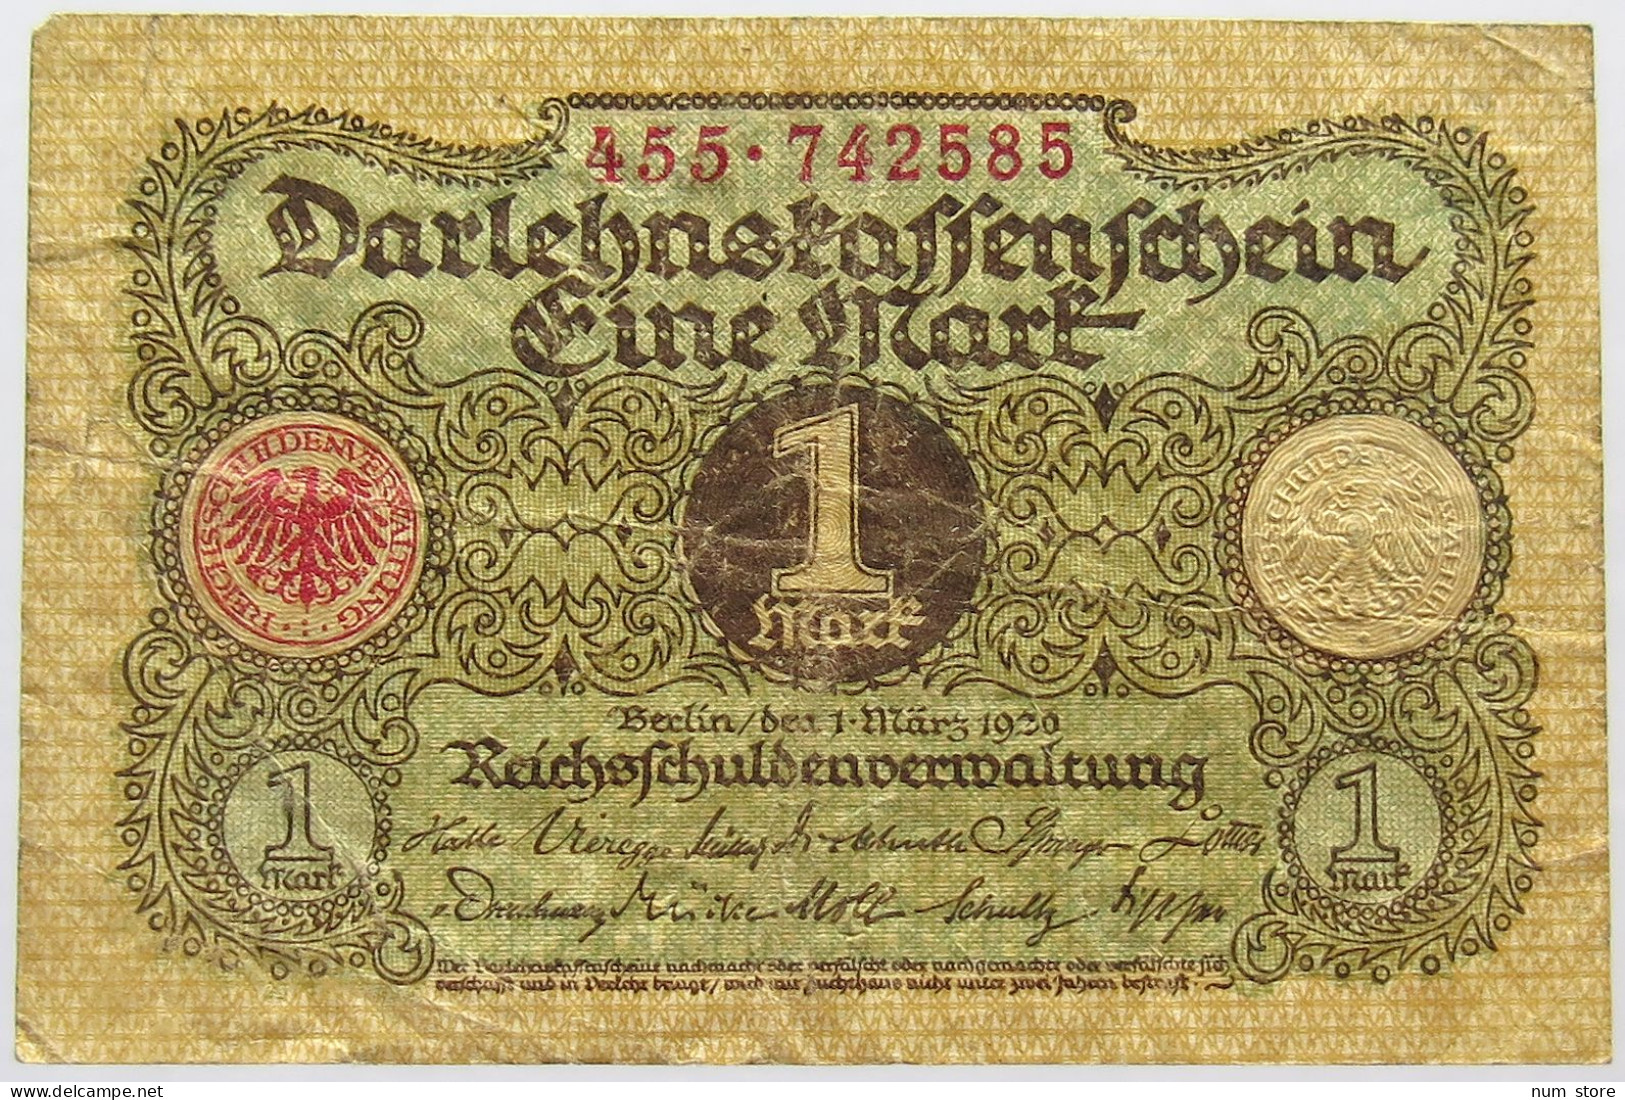 GERMANY 1 MARK 1920 #alb066 0029 - 1 Mark